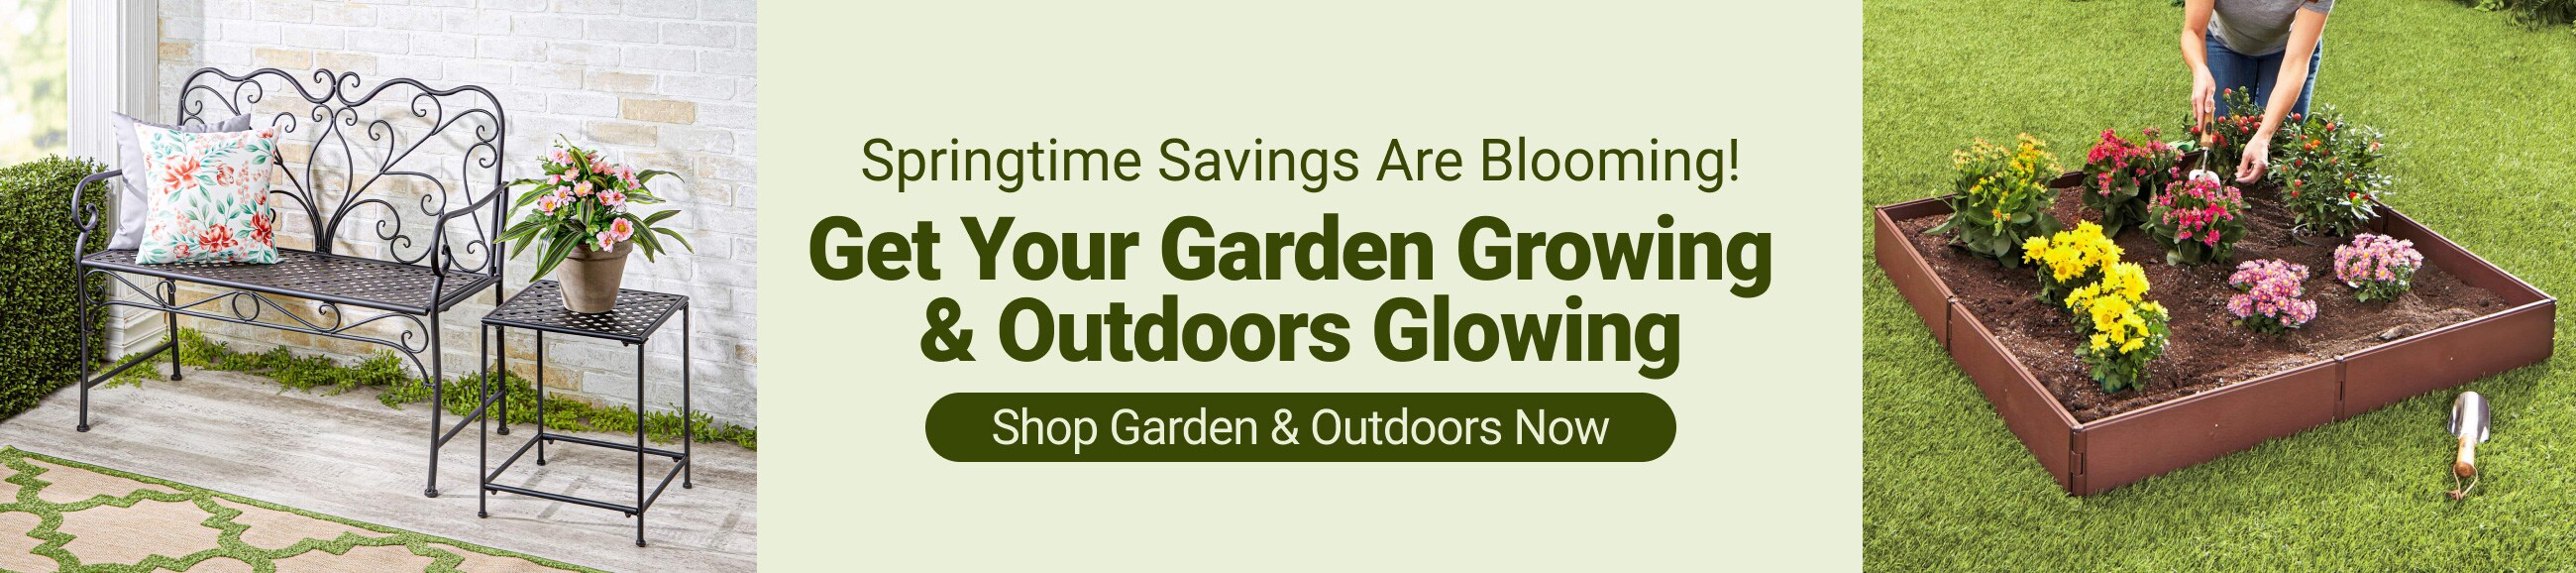 Garden & Outdoors - Shop Now!